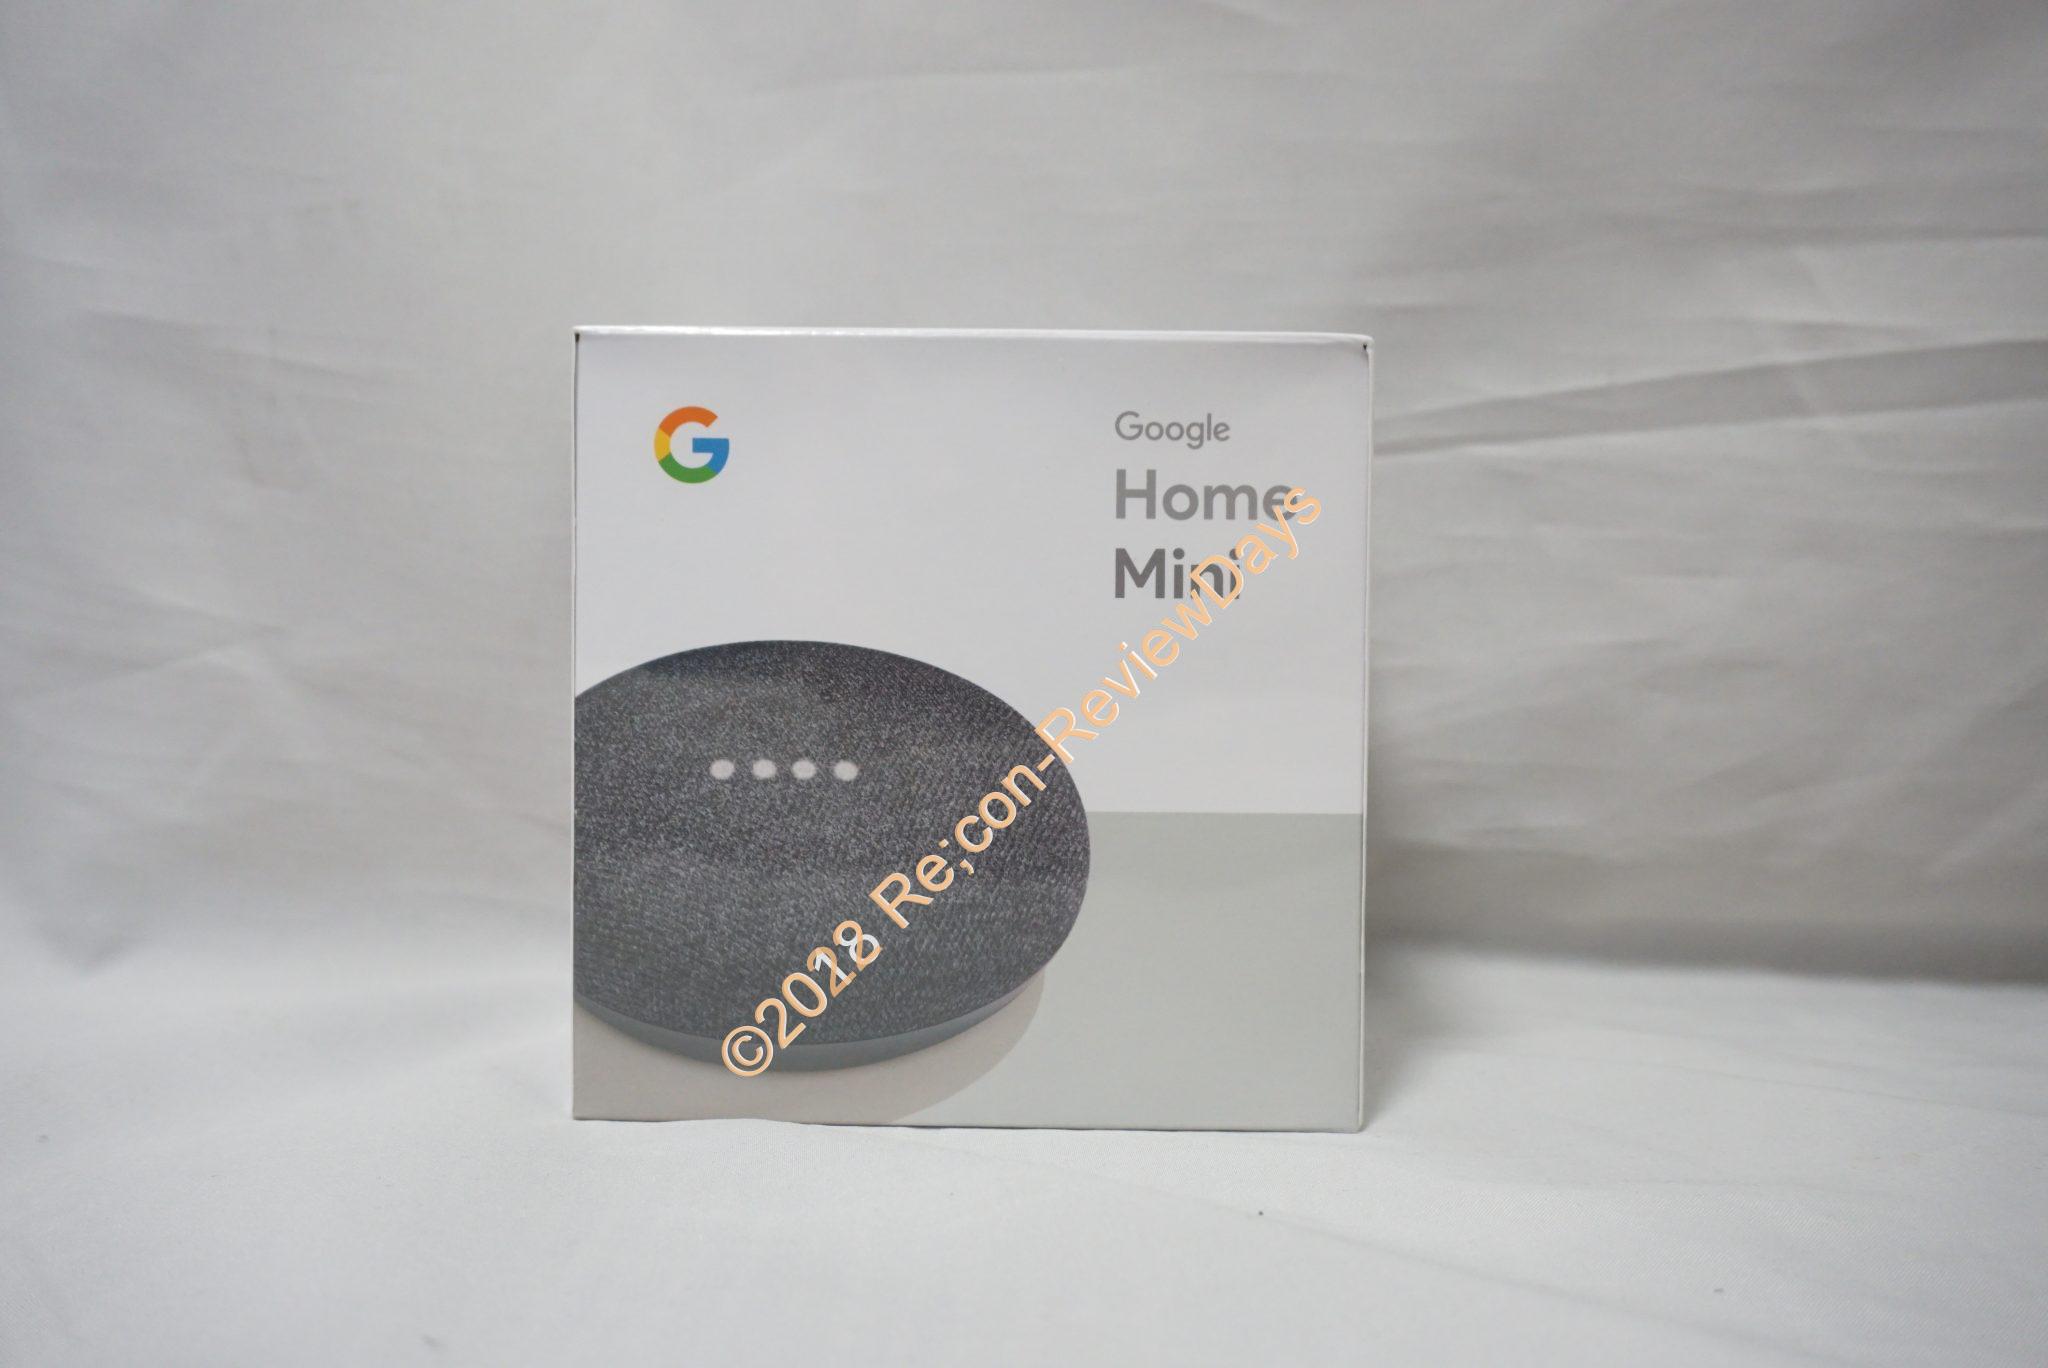 今更ながらGoogle Home Miniを購入しました #Google #GoogleHome #GoogleHomeMini